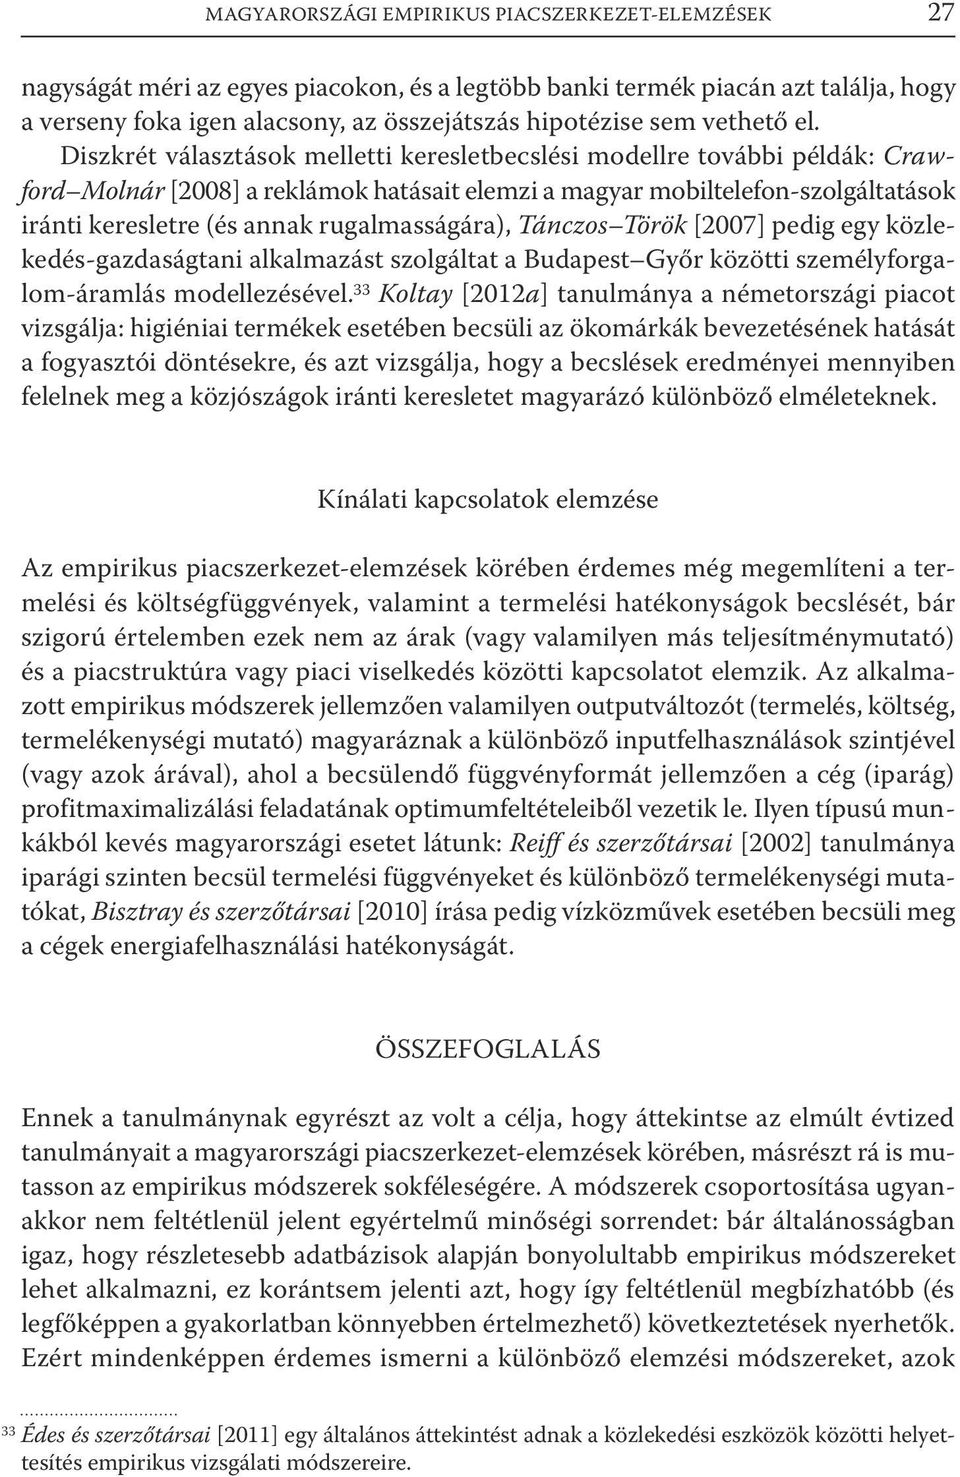 Diszkrét választások melletti keresletbecslési modellre további példák: Crawford Molnár [2008] a reklámok hatásait elemzi a magyar mobiltelefon-szolgáltatások iránti keresletre (és annak